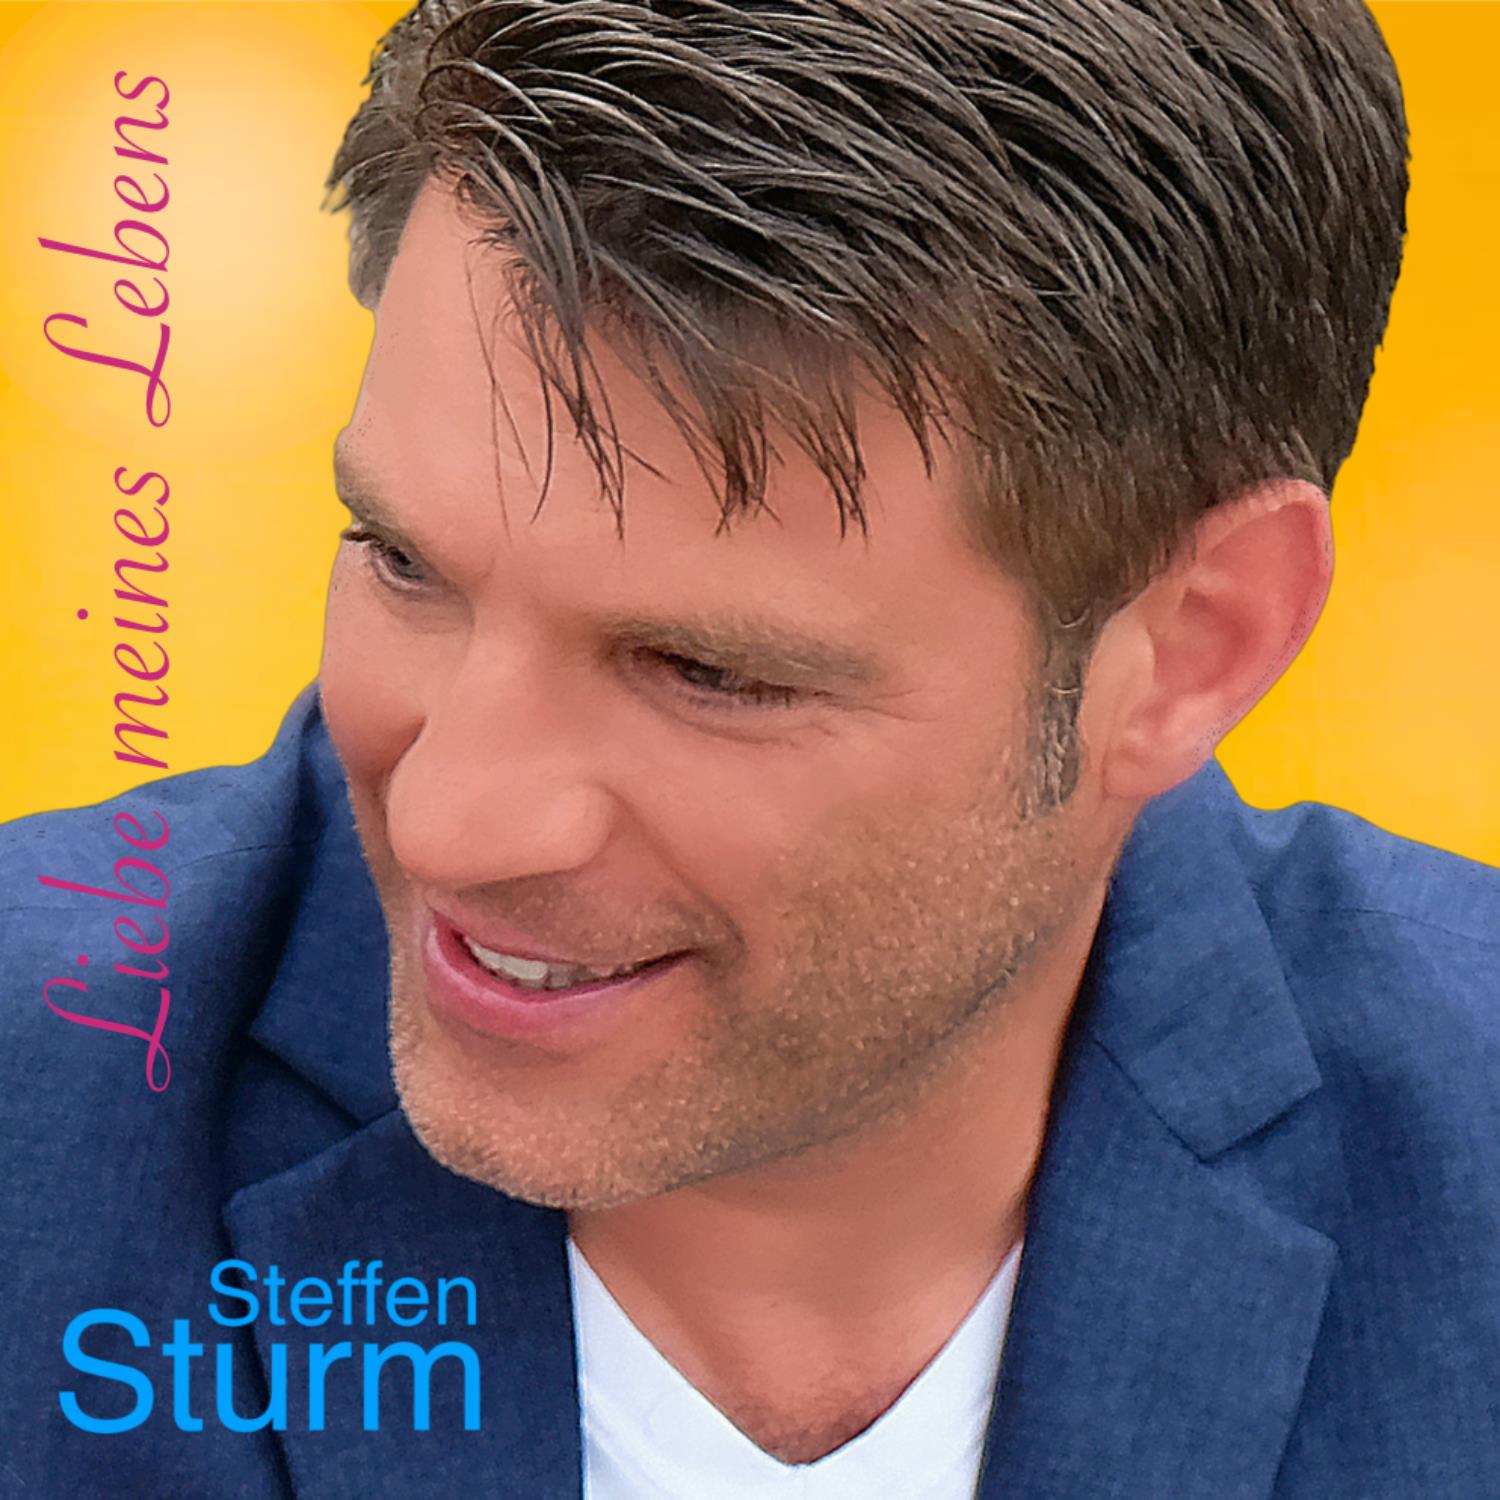 STEFFEN STURM * Liebe meines Lebens (Download-Track)